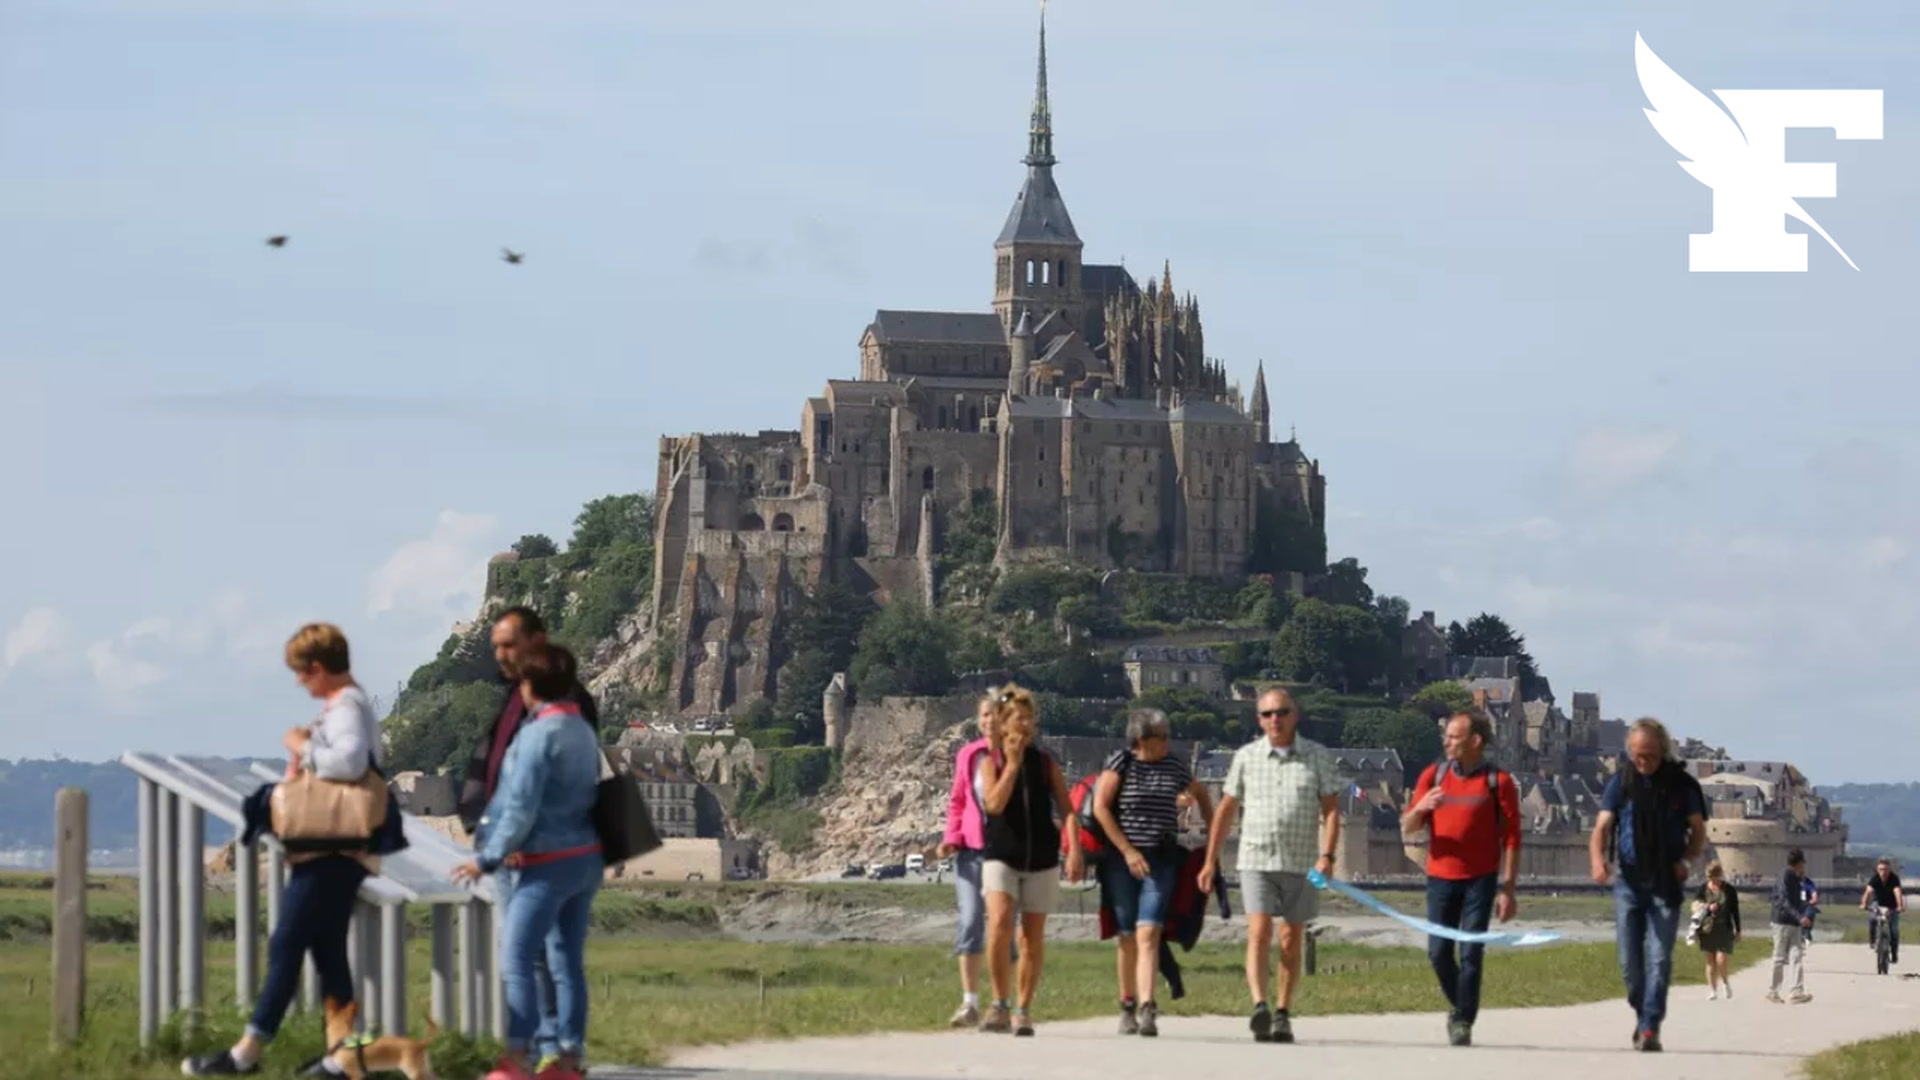 Les secrets du Mont-Saint-Michel, Hors-série